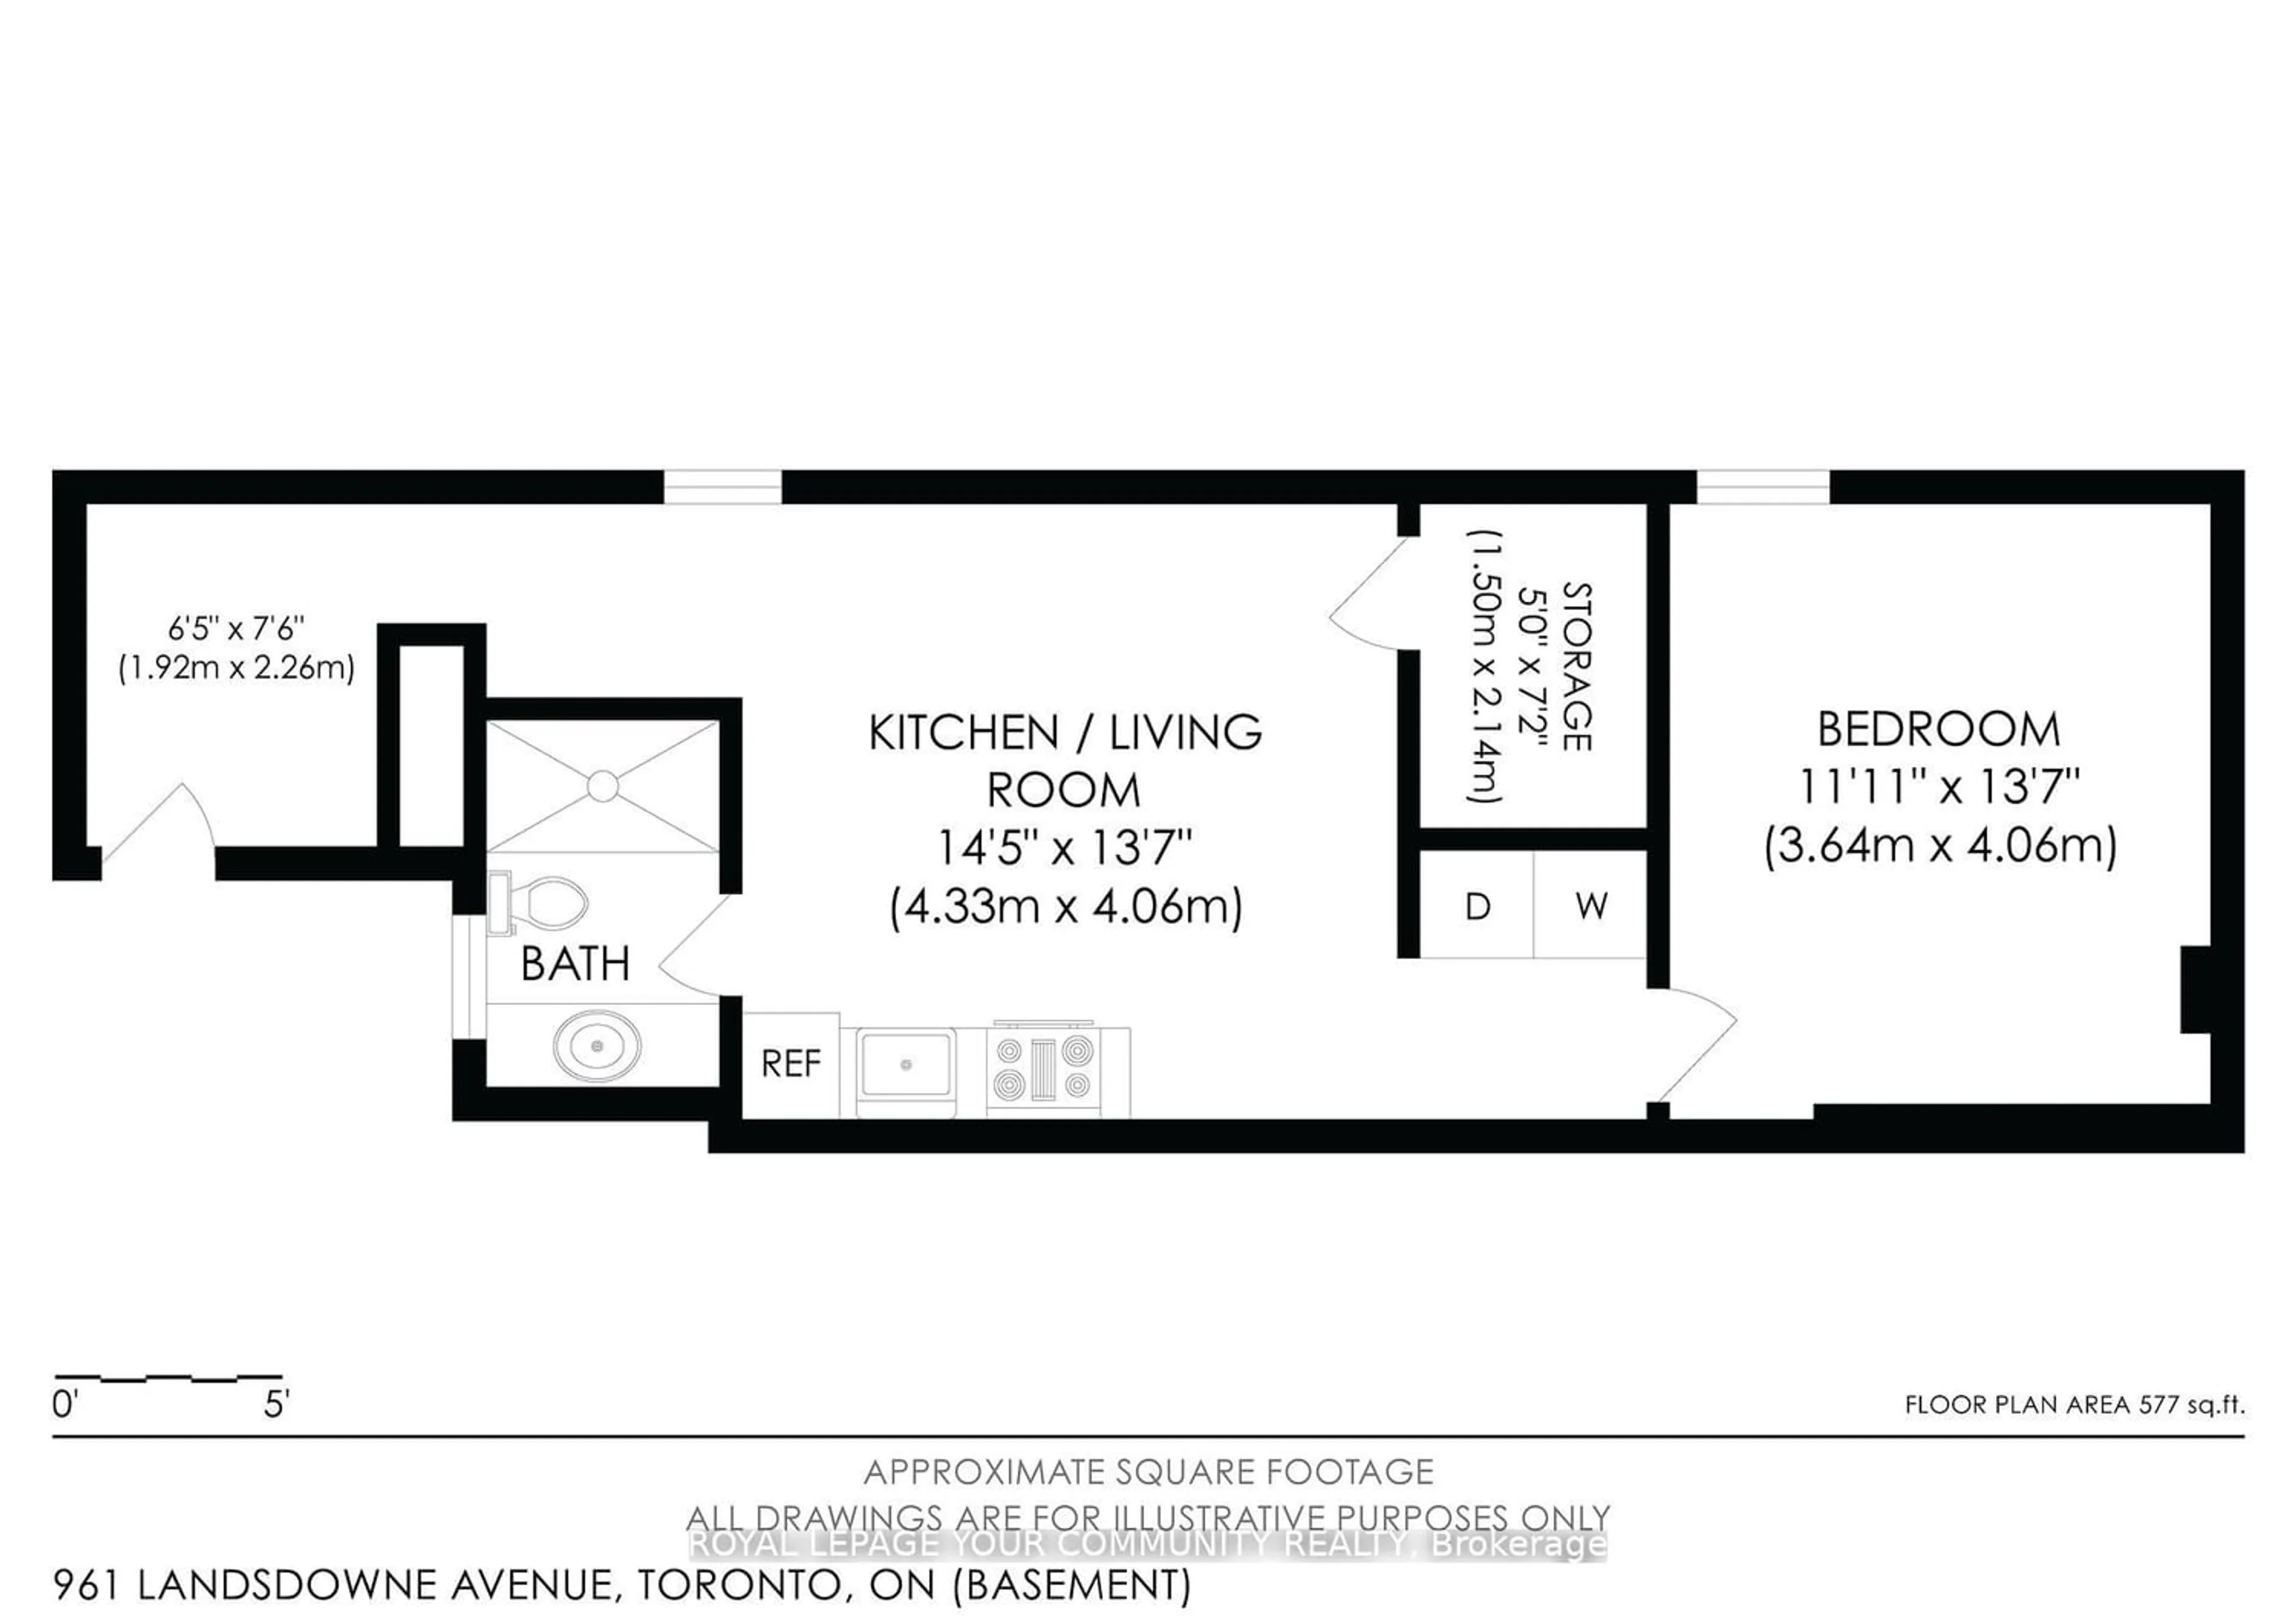 Floor plan for 961 Lansdowne Ave, Toronto Ontario M6H 3Z5